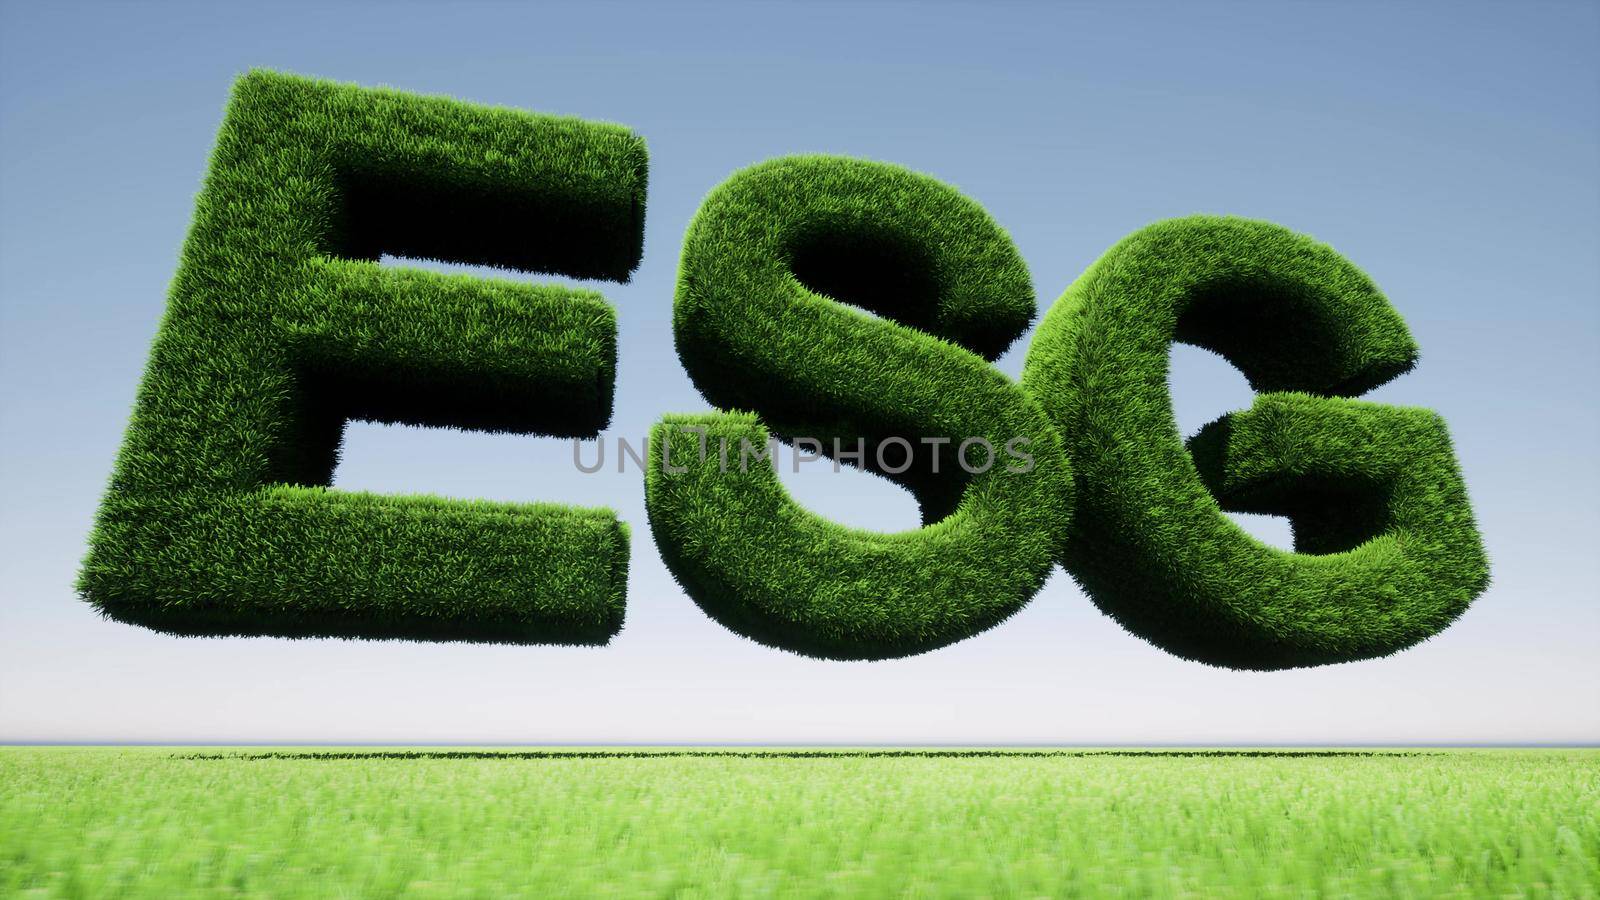 Green grass ESG sign nature landscape Environmental Social Governance 3d render by Zozulinskyi